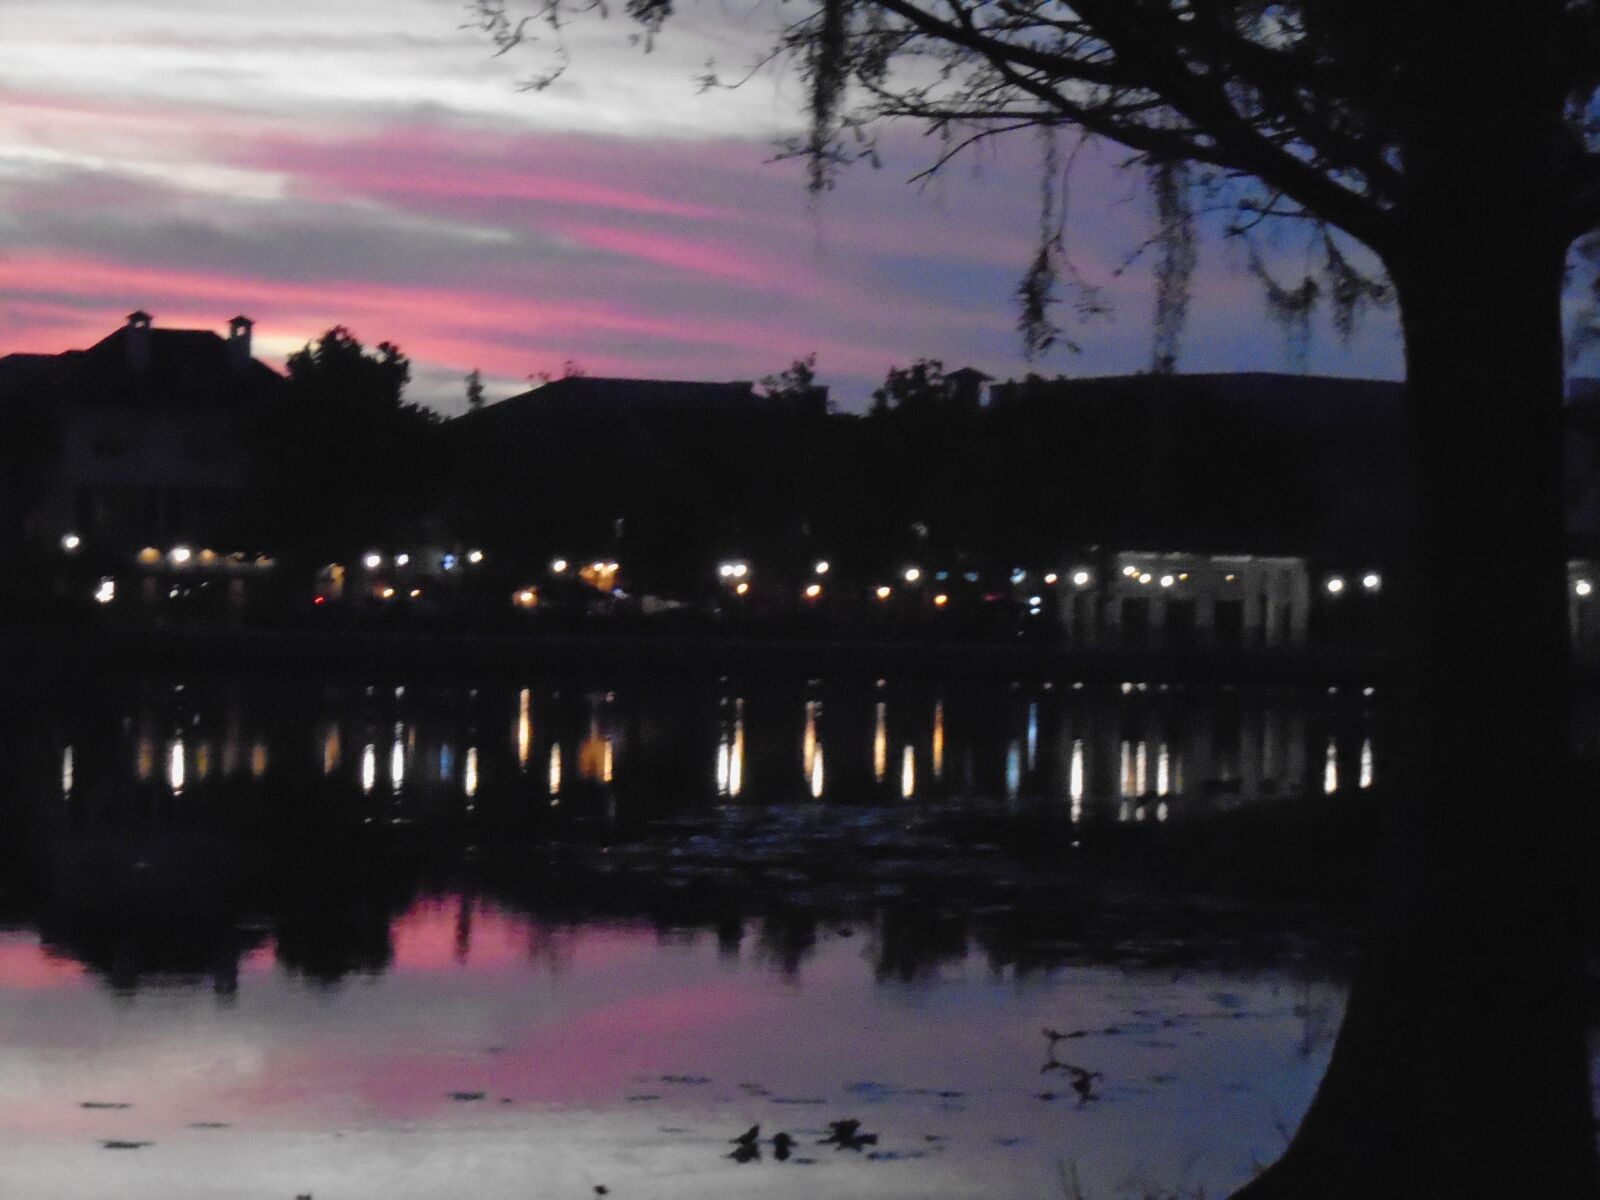 Sony Cyber-shot DSC-W800 sample photo. Sunset, lake, landscape photography